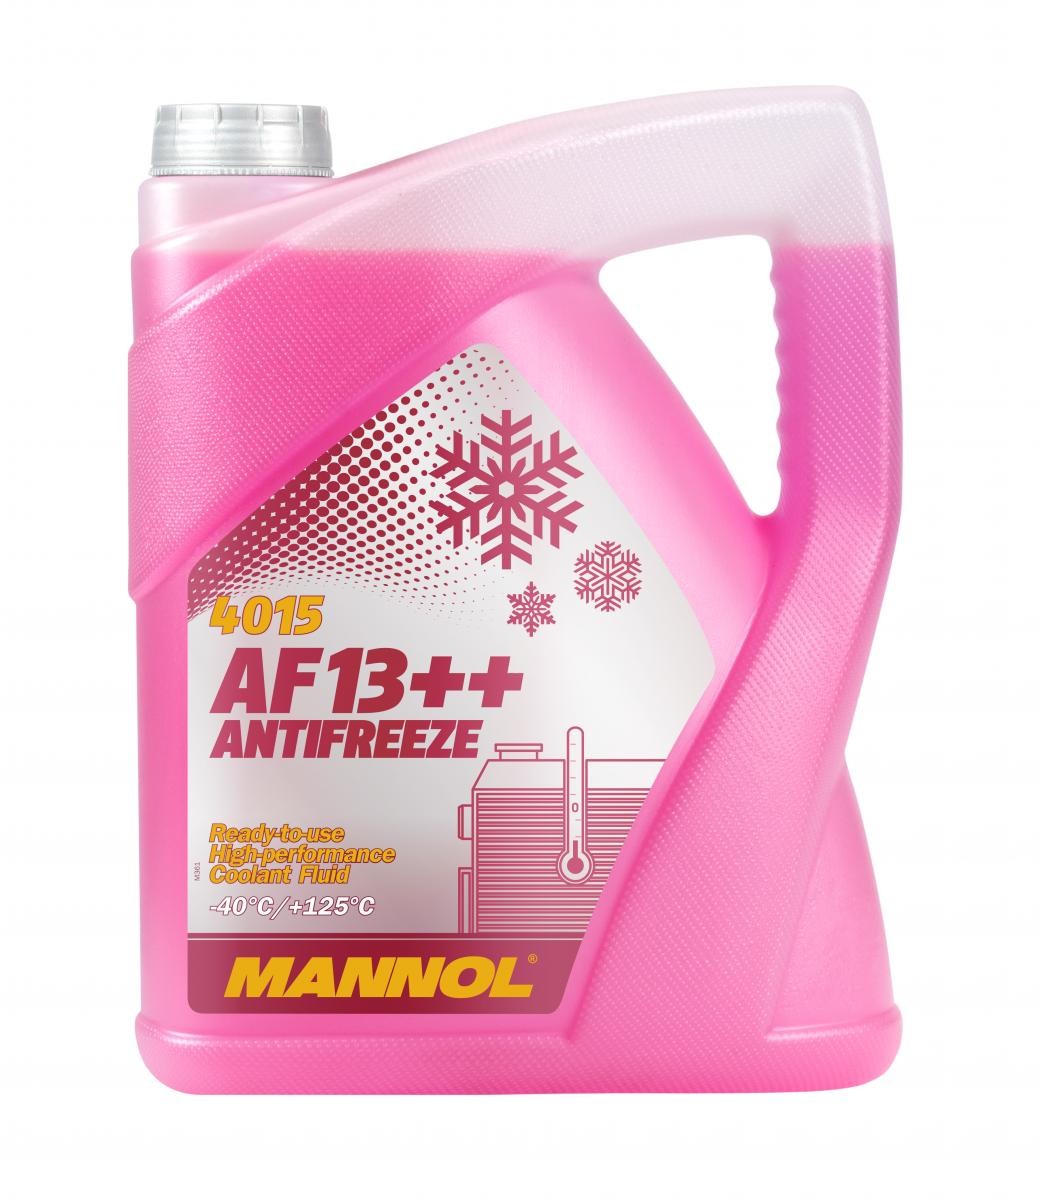 Kupite MANNOL Sredstvo proti zmrzovanju hladilne vode (antifriz) MN4015-5 za DAF po zmerni ceni